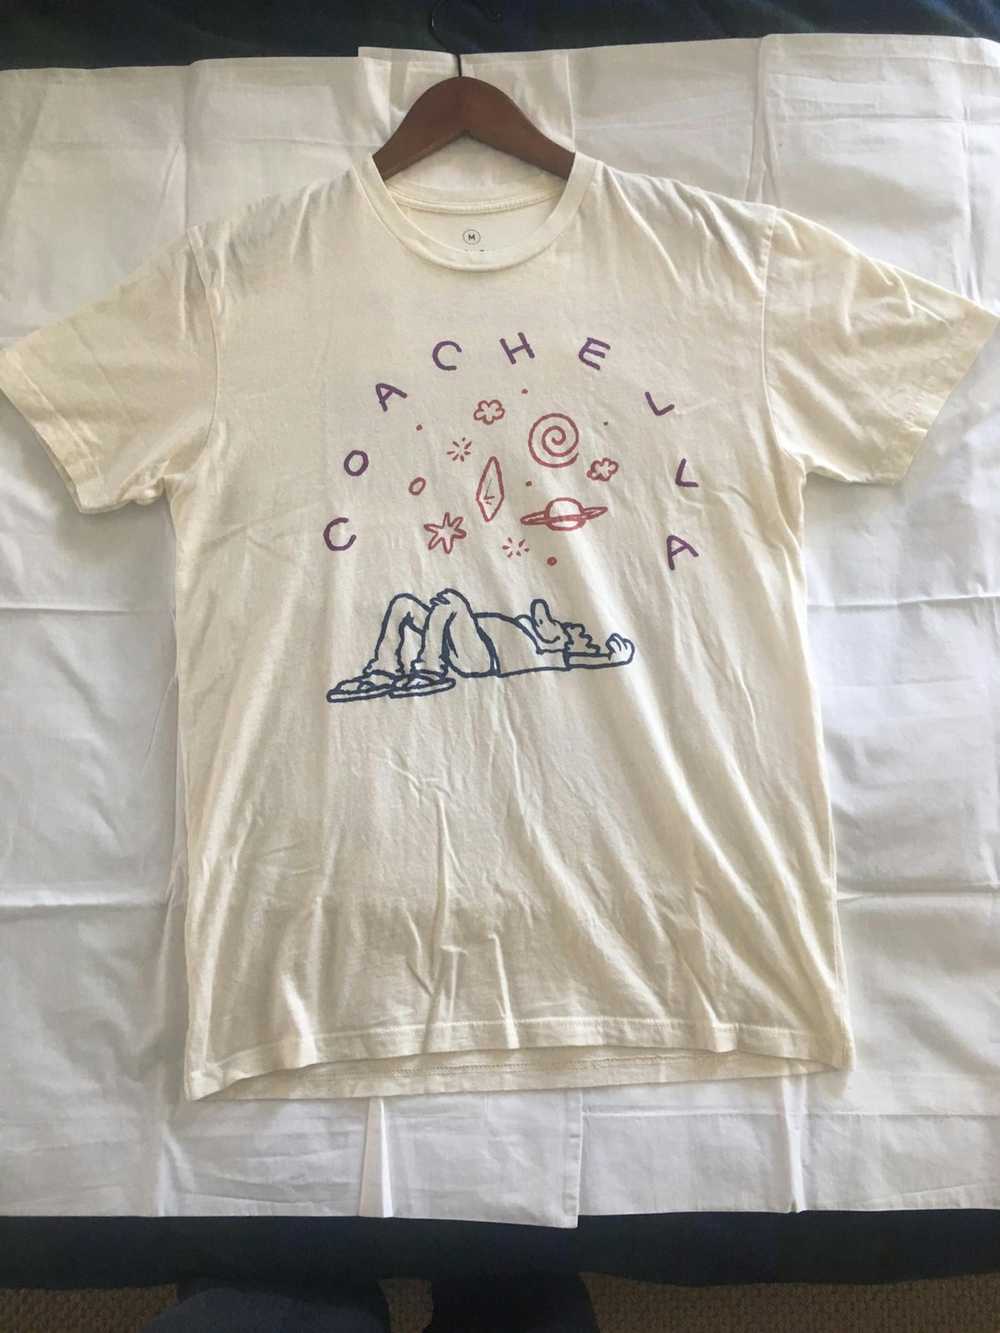 Coachella Coachella 2016 T-shirt Medium - image 1